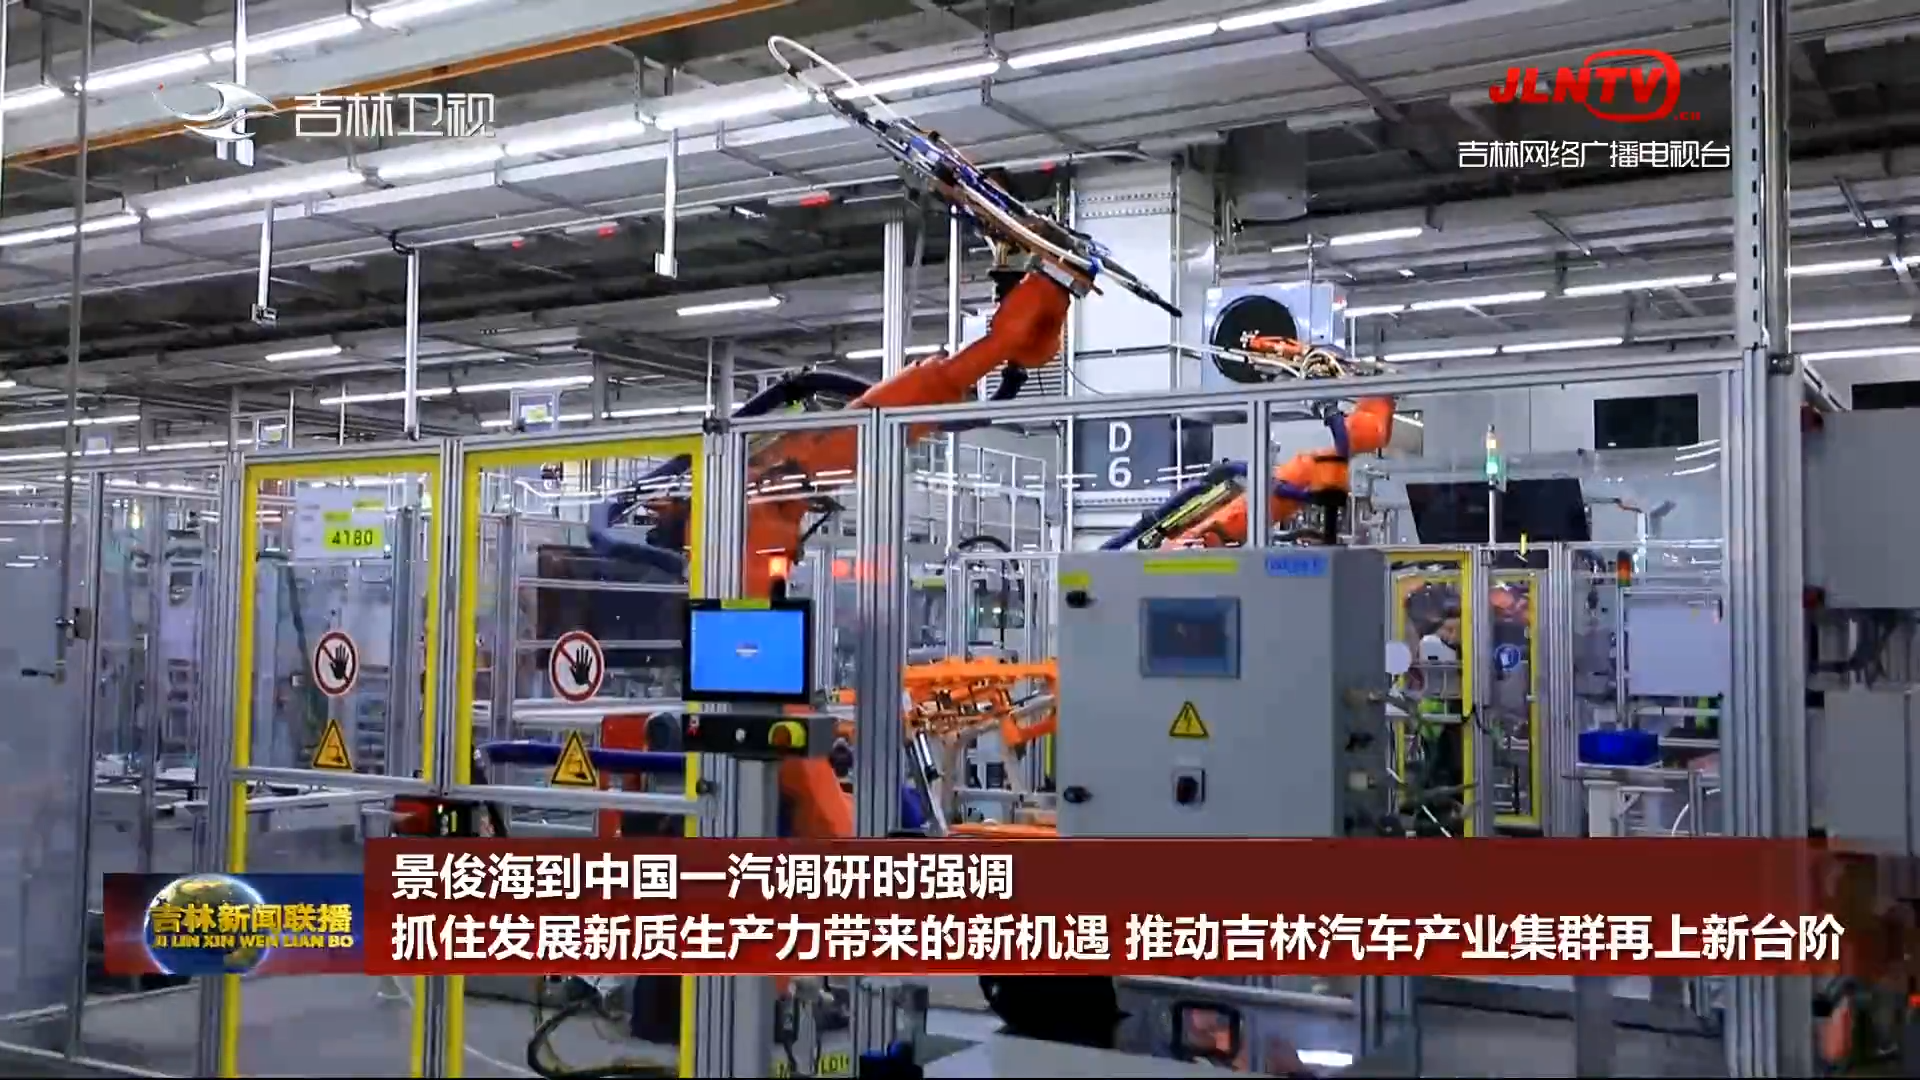 景俊海到中国一汽调研时强调 抓住发展新质生产力带来的新机遇 推动吉林汽车产业集群再上新台阶